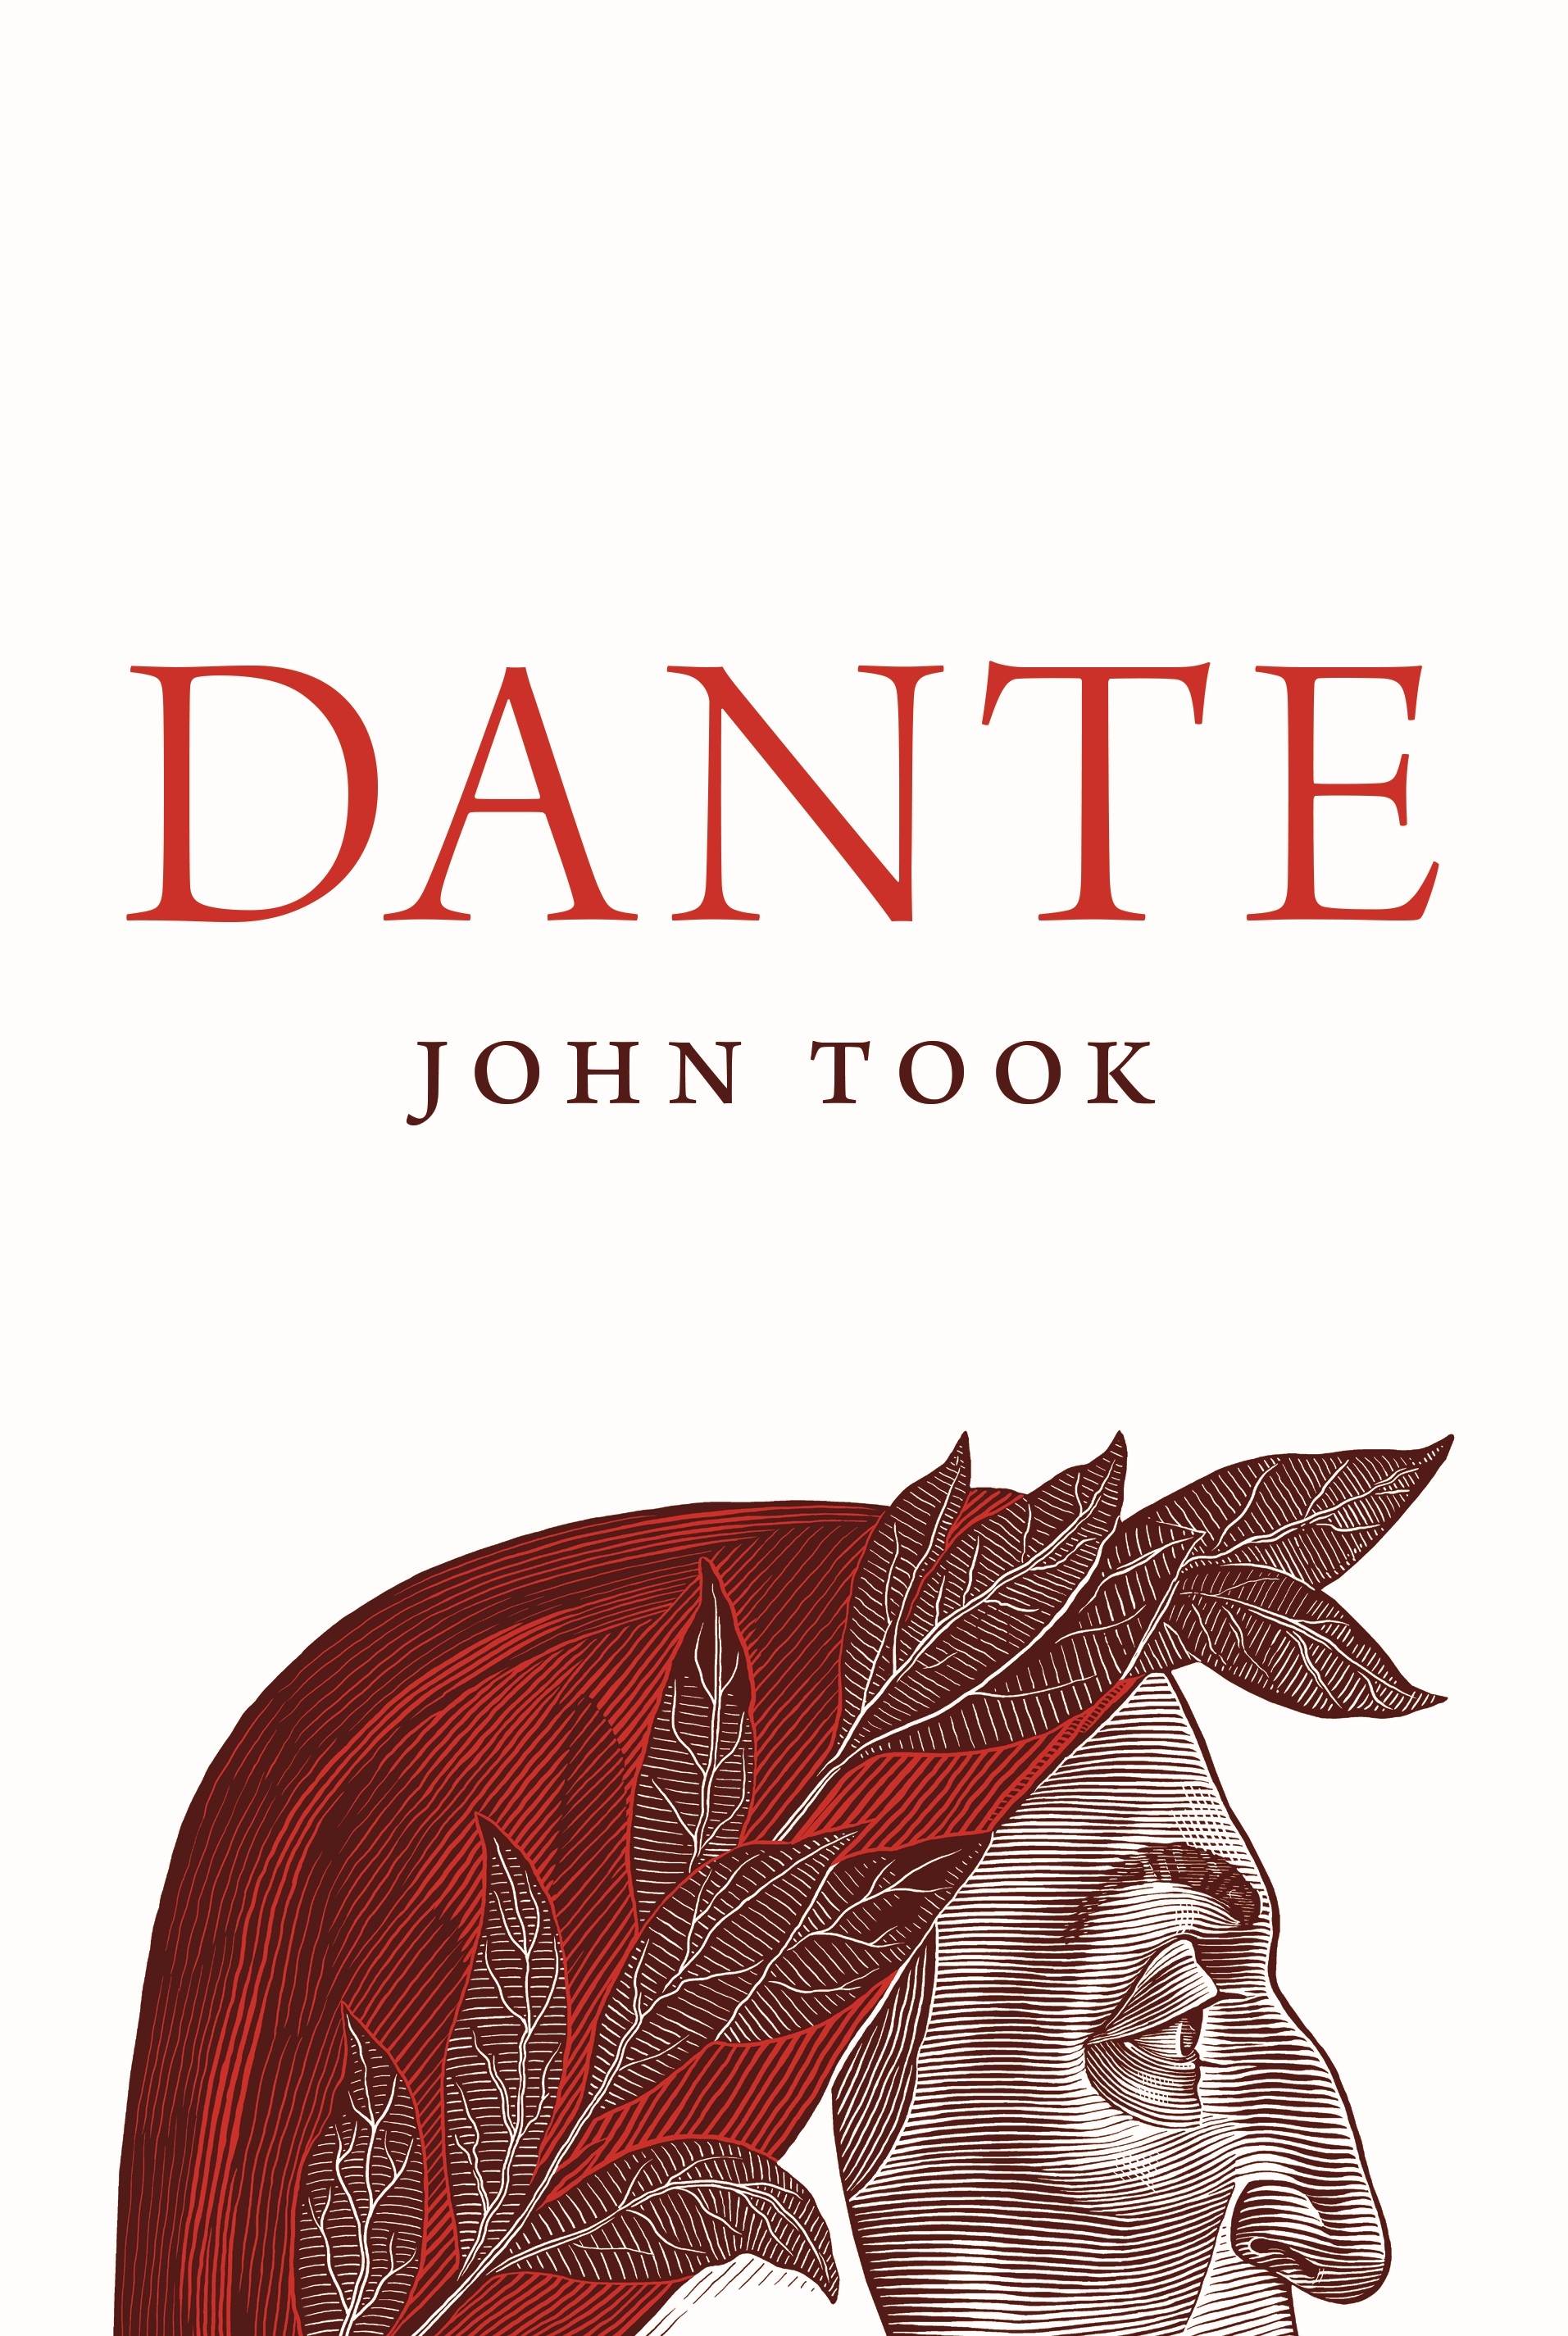 Dante's Inferno - Kindle edition by Dante Alighieri, GP Editors